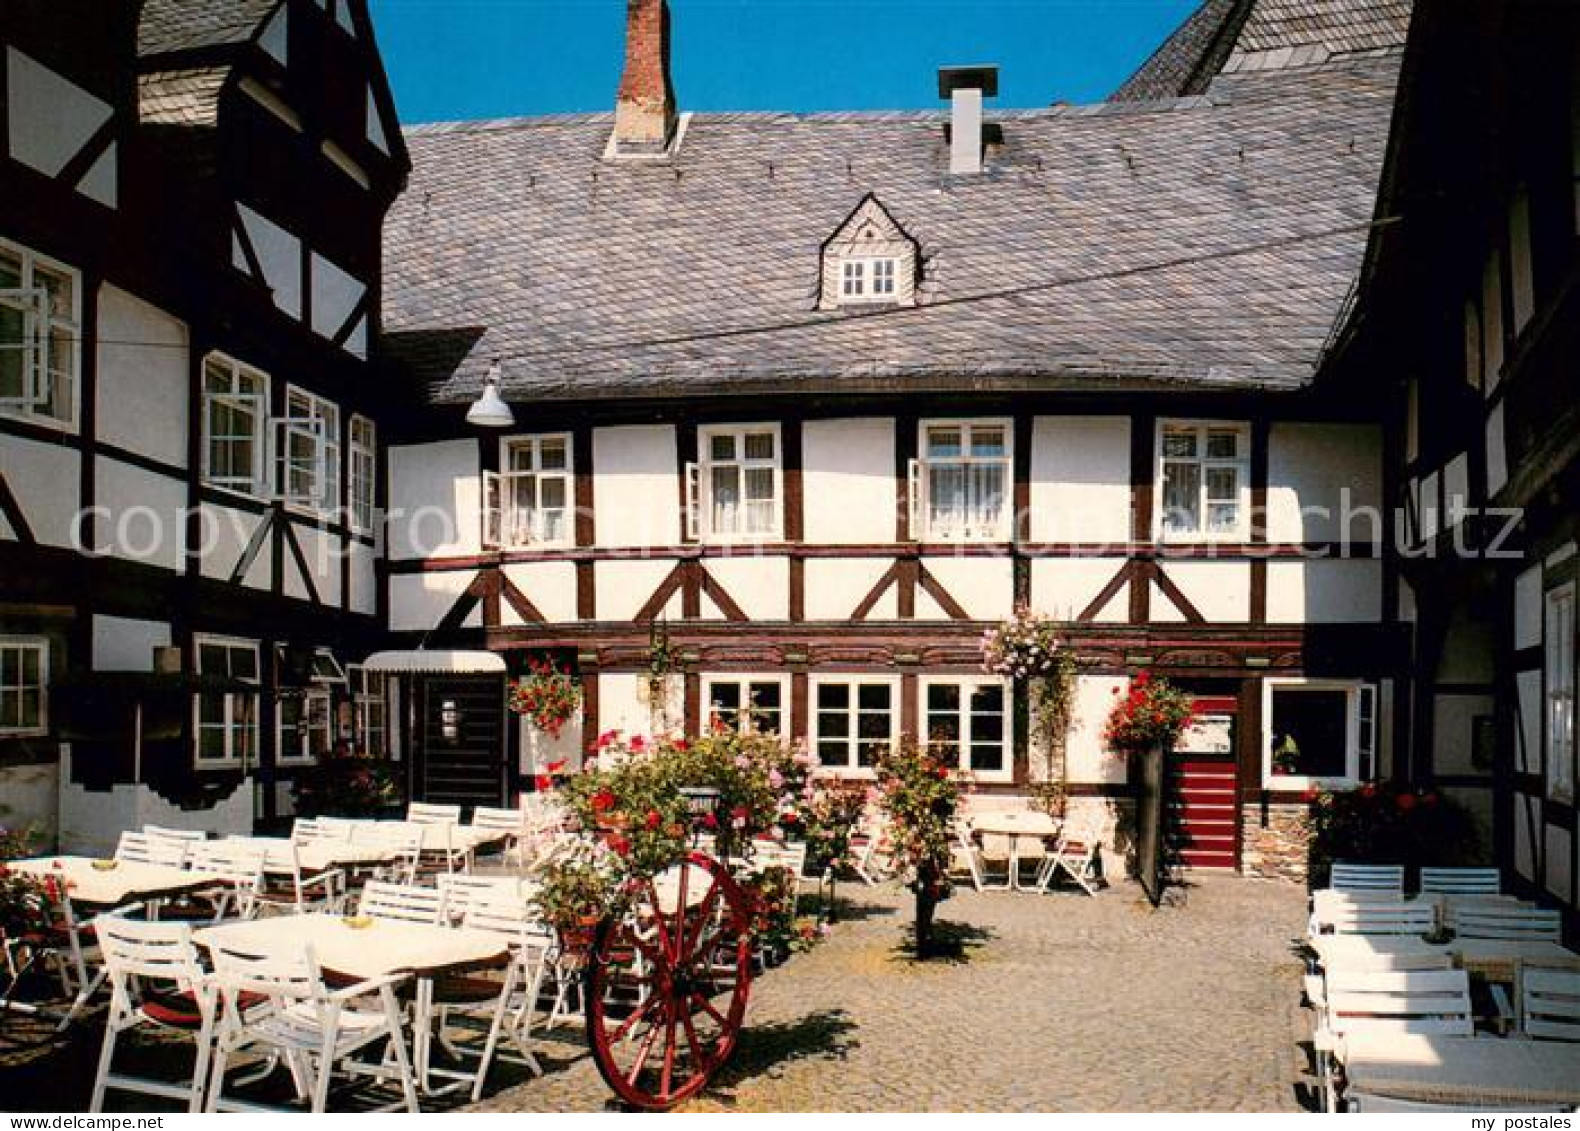 73653538 Goslar Weisser Schwan In Der Muenzstrasse Restaurant Balkan Grill Gosla - Goslar